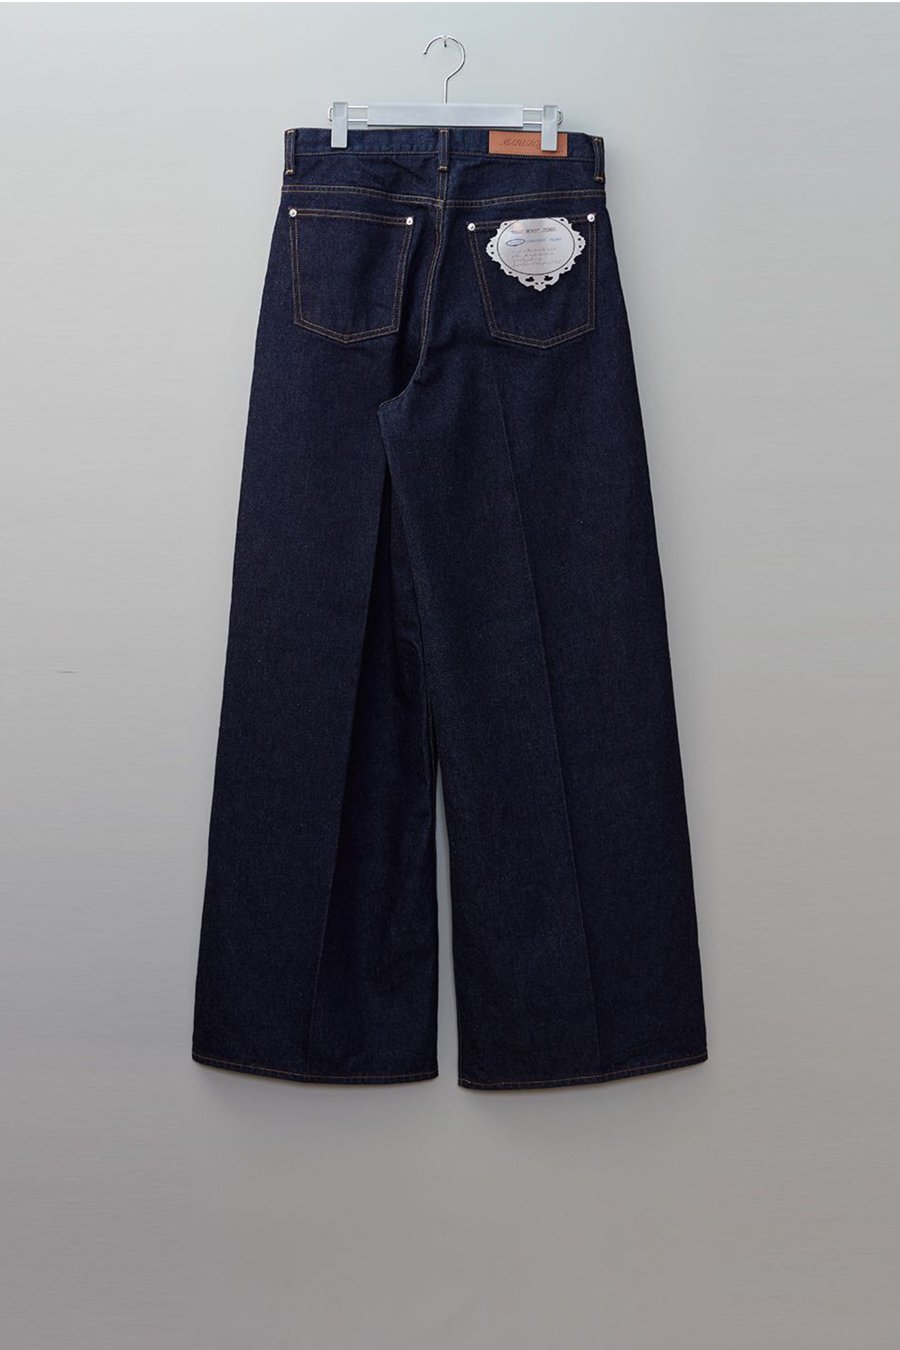 MASU baggy jeans(indigo) denim サイズ44 - デニム